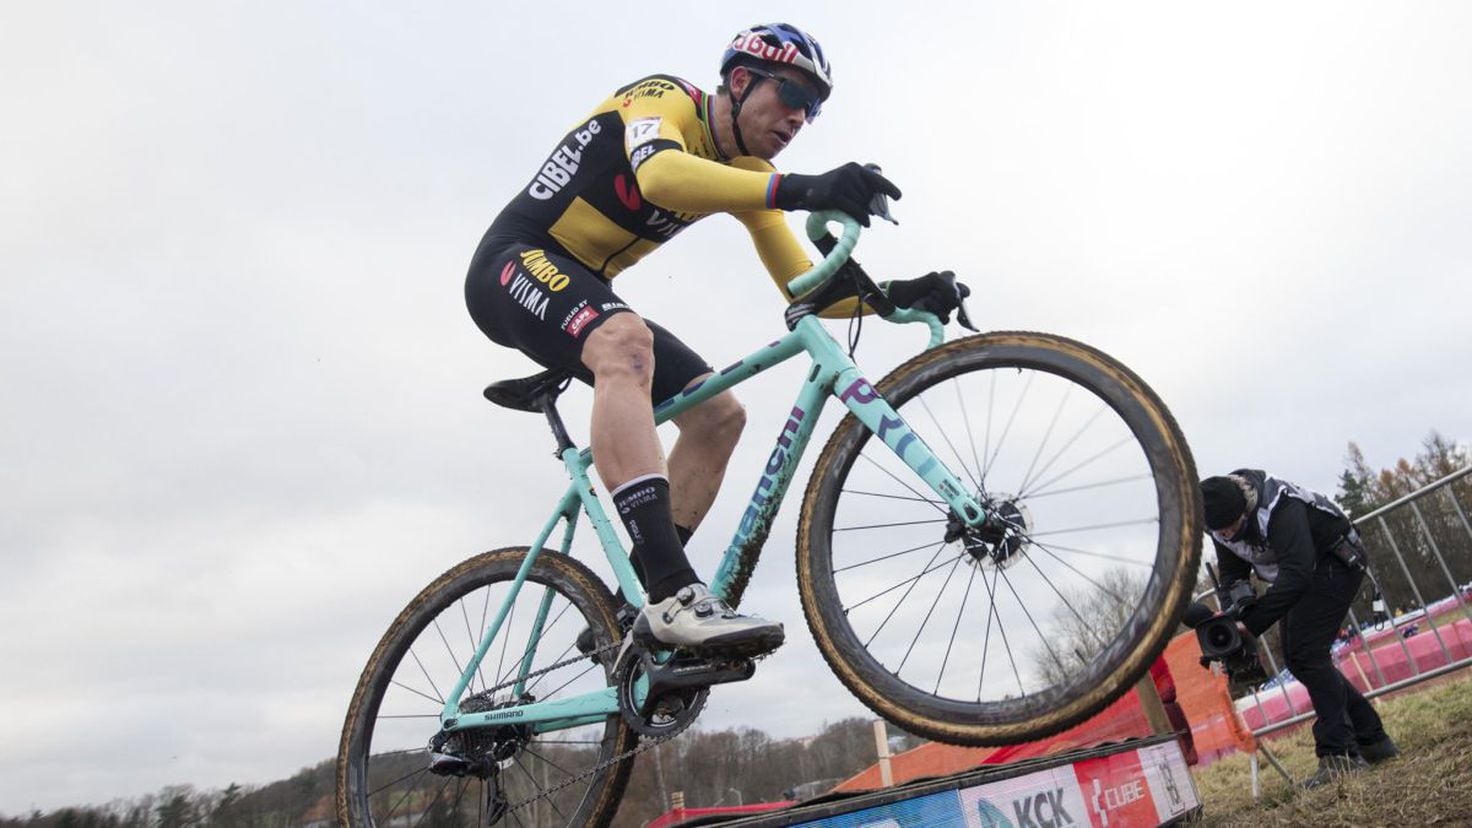 Van Aert starts the cyclocross season in Essen

